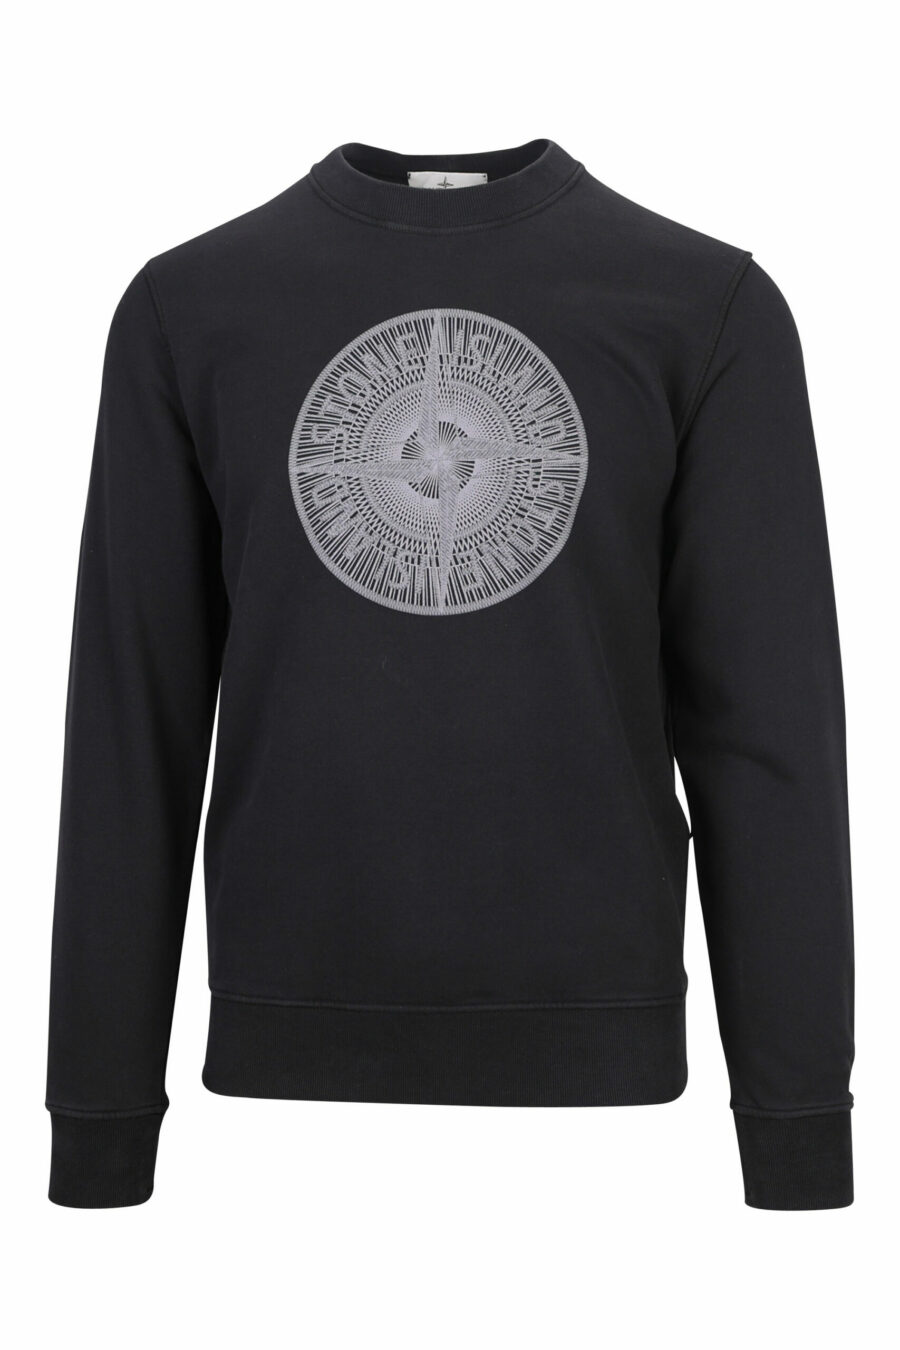 Schwarzes Sweatshirt mit rundem Maxilogo - 8052572740039 skaliert